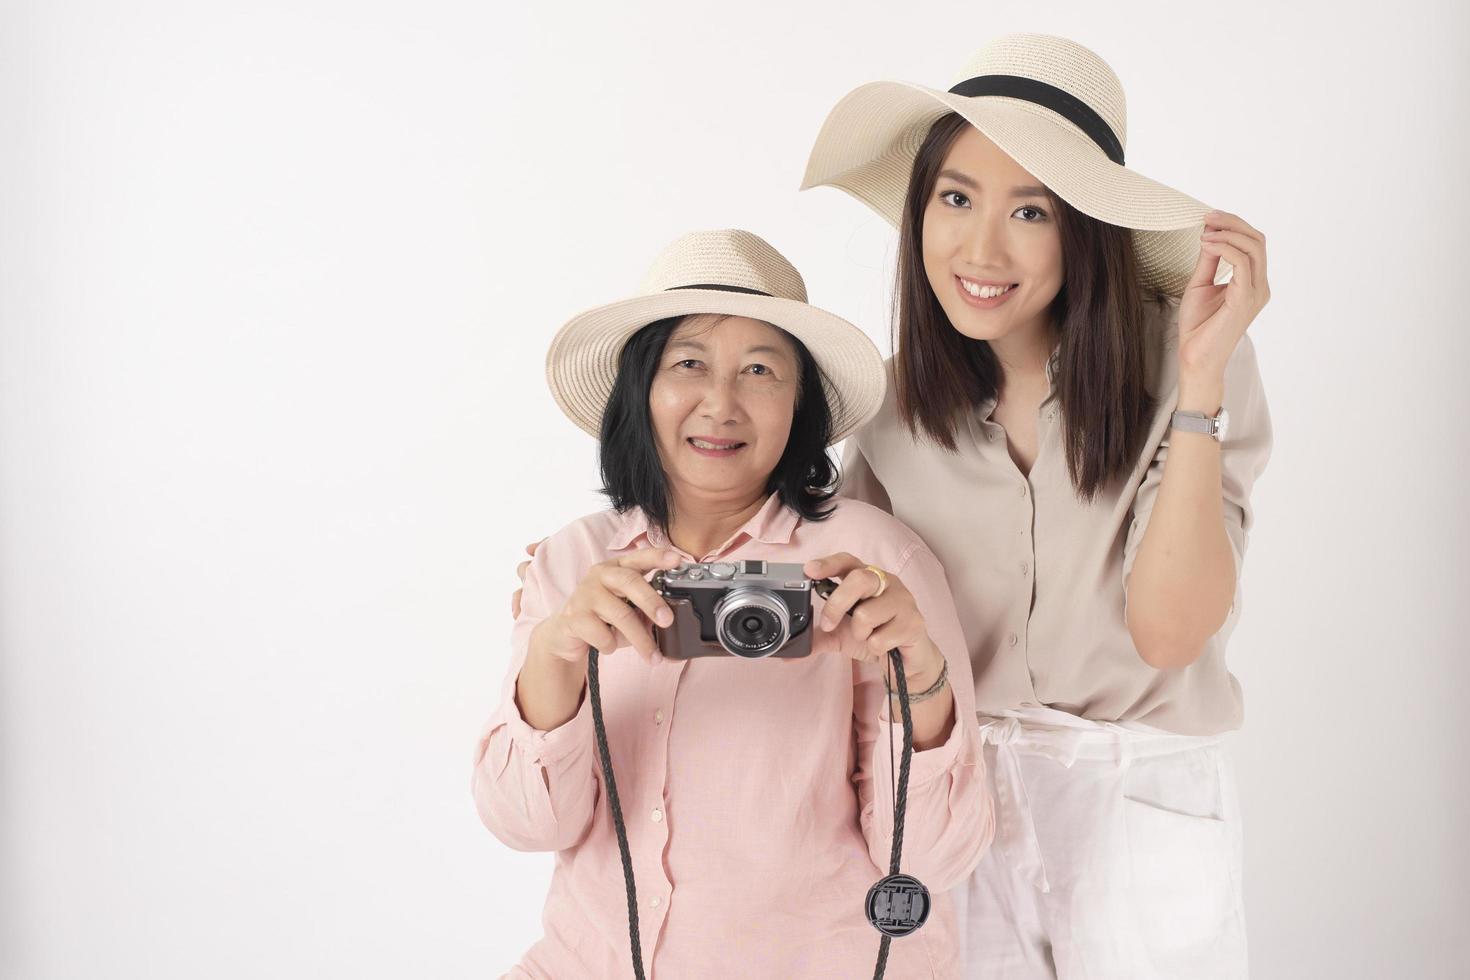 anciana asiática y su hija de fondo blanco, concepto de viaje foto